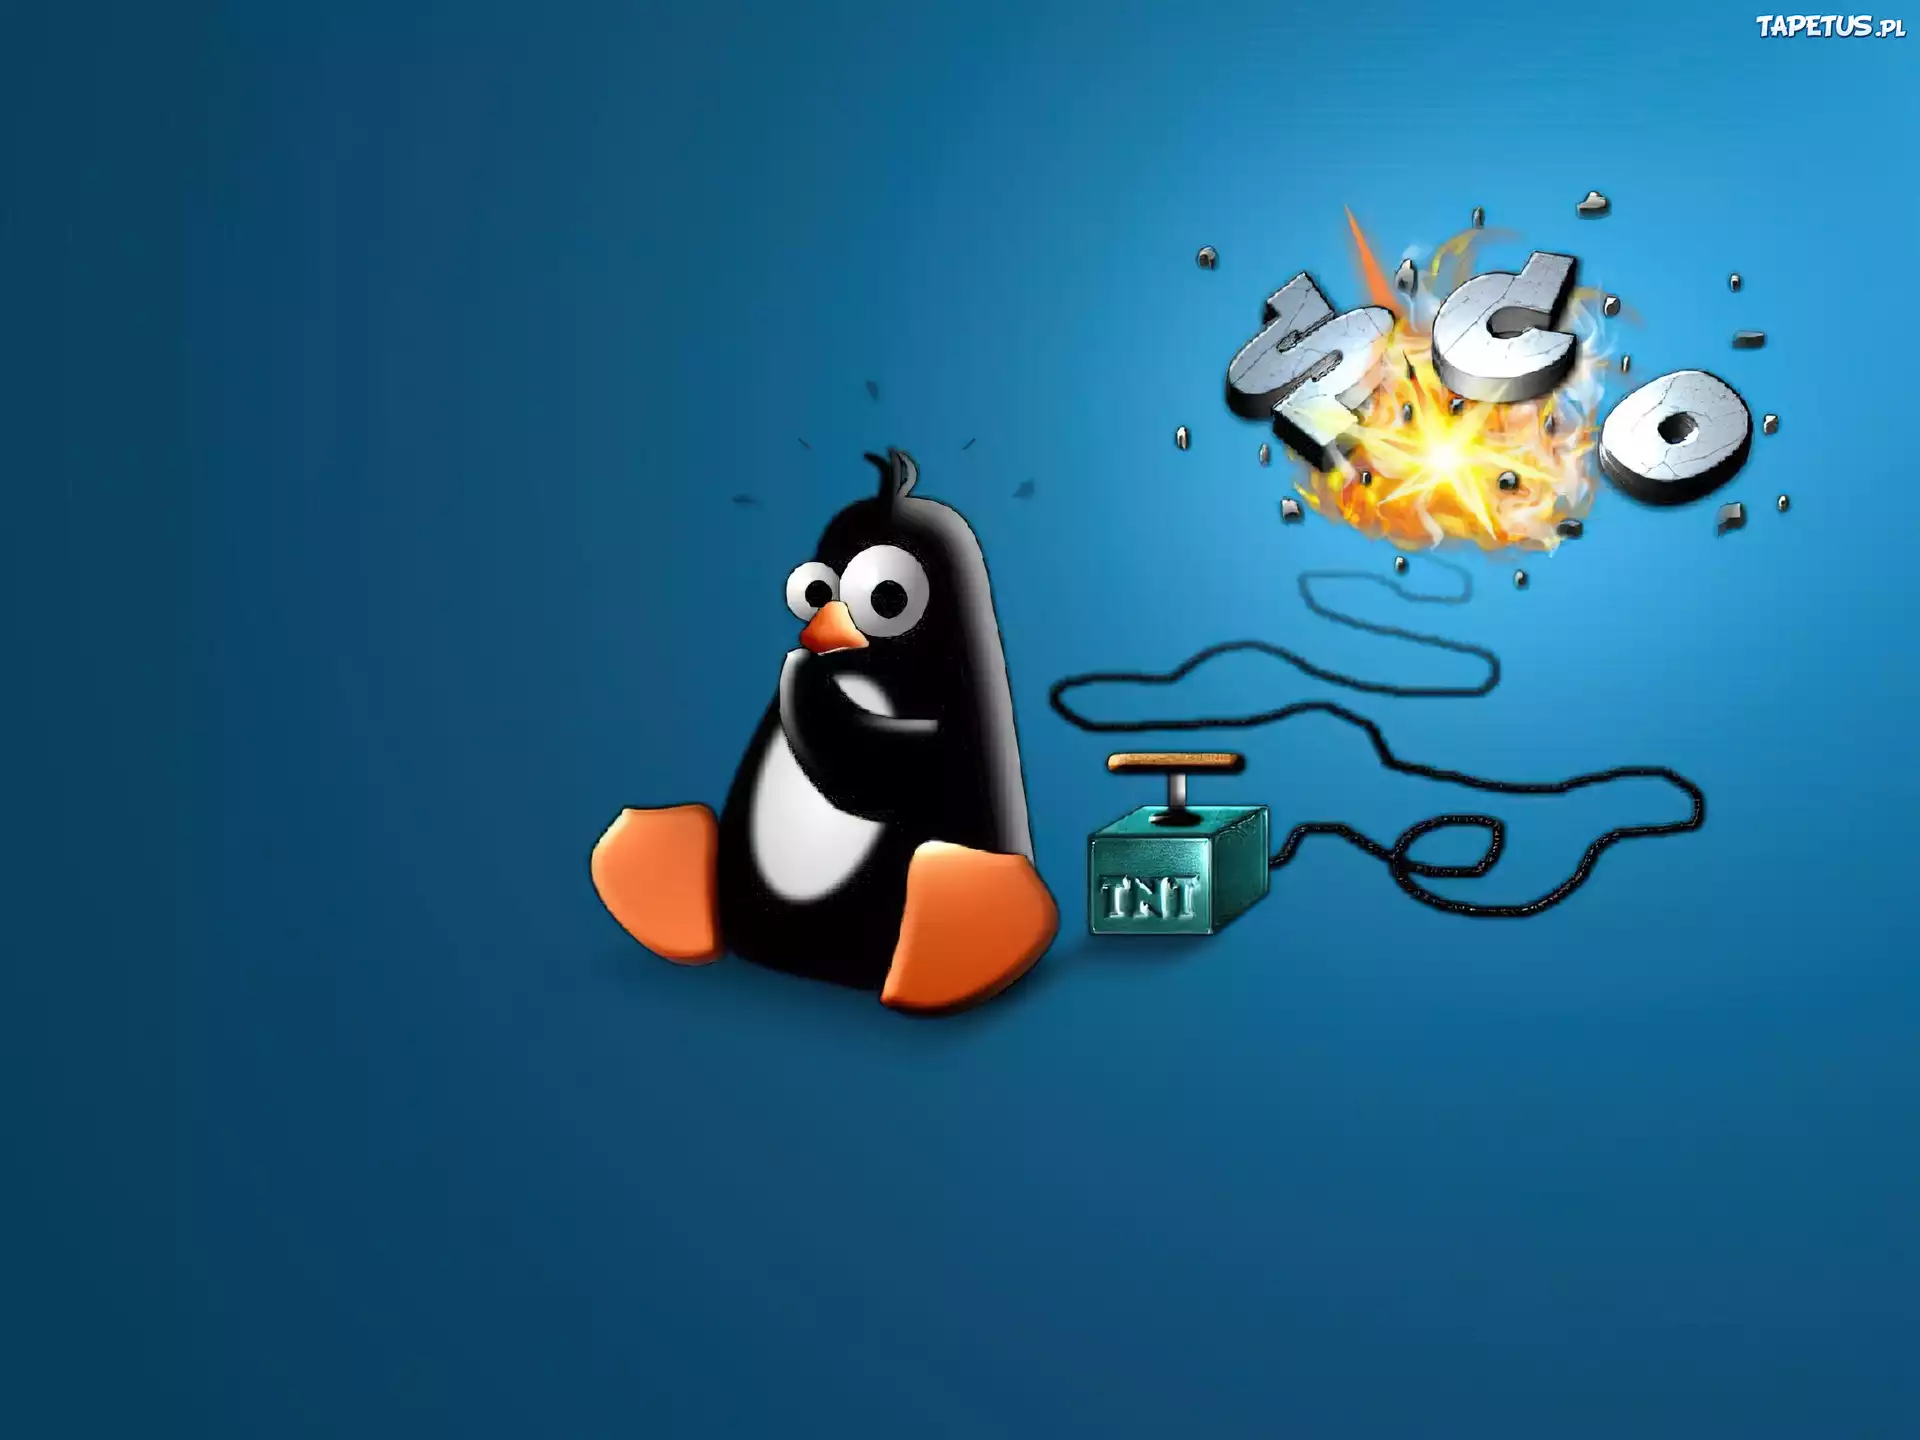 Vk linux. Пингвин линукс. Обои линукс. Заставка Linux. Фон рабочего стола Linux.